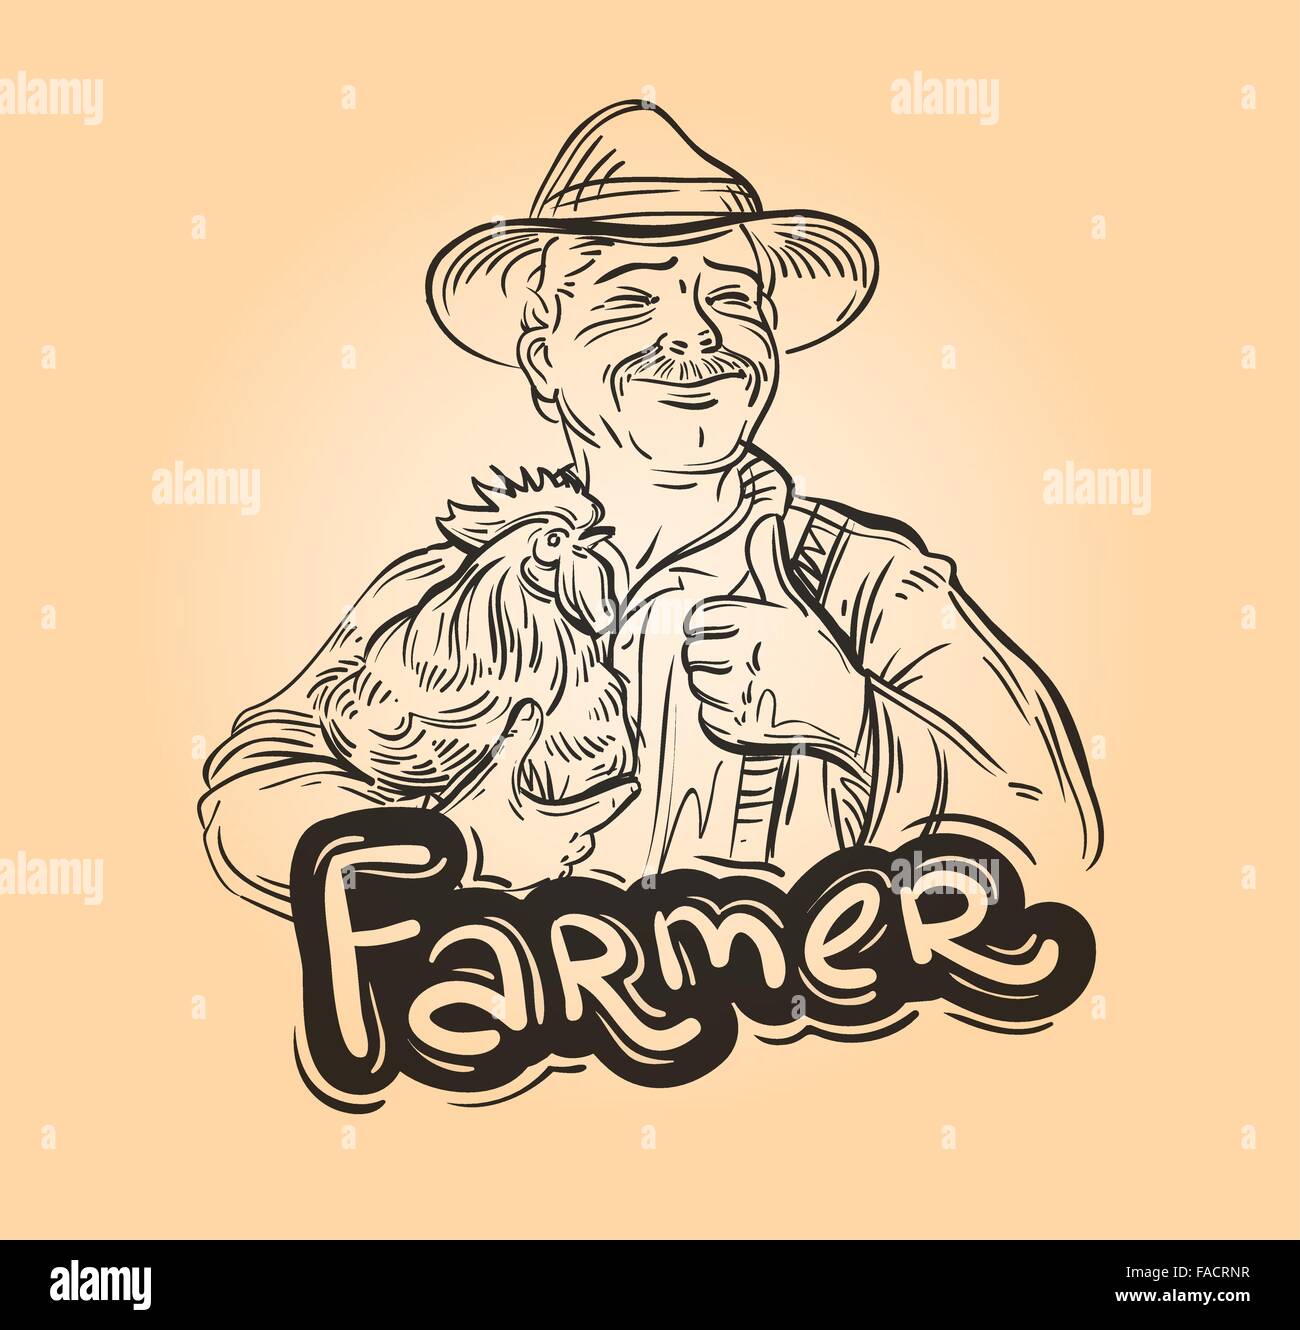 farm, farming vector logo design template. farmer, grower or chicken icon  Stock Vector Image & Art - Alamy